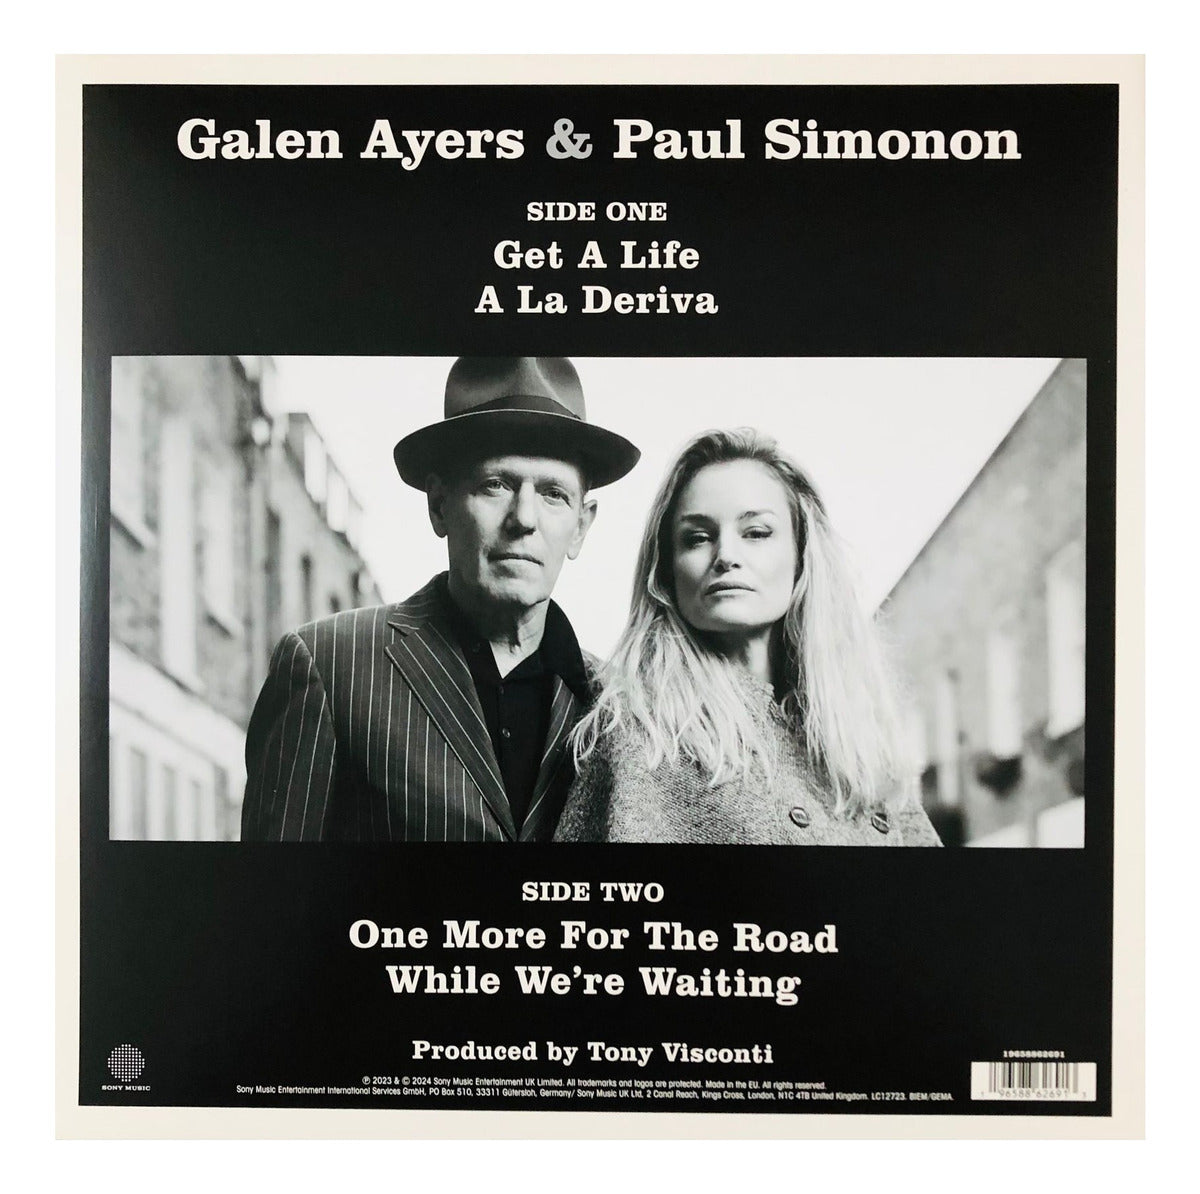 Galen Ayers & Paul Simonon Uno Mas Rsd 2024 Lp Vinyl